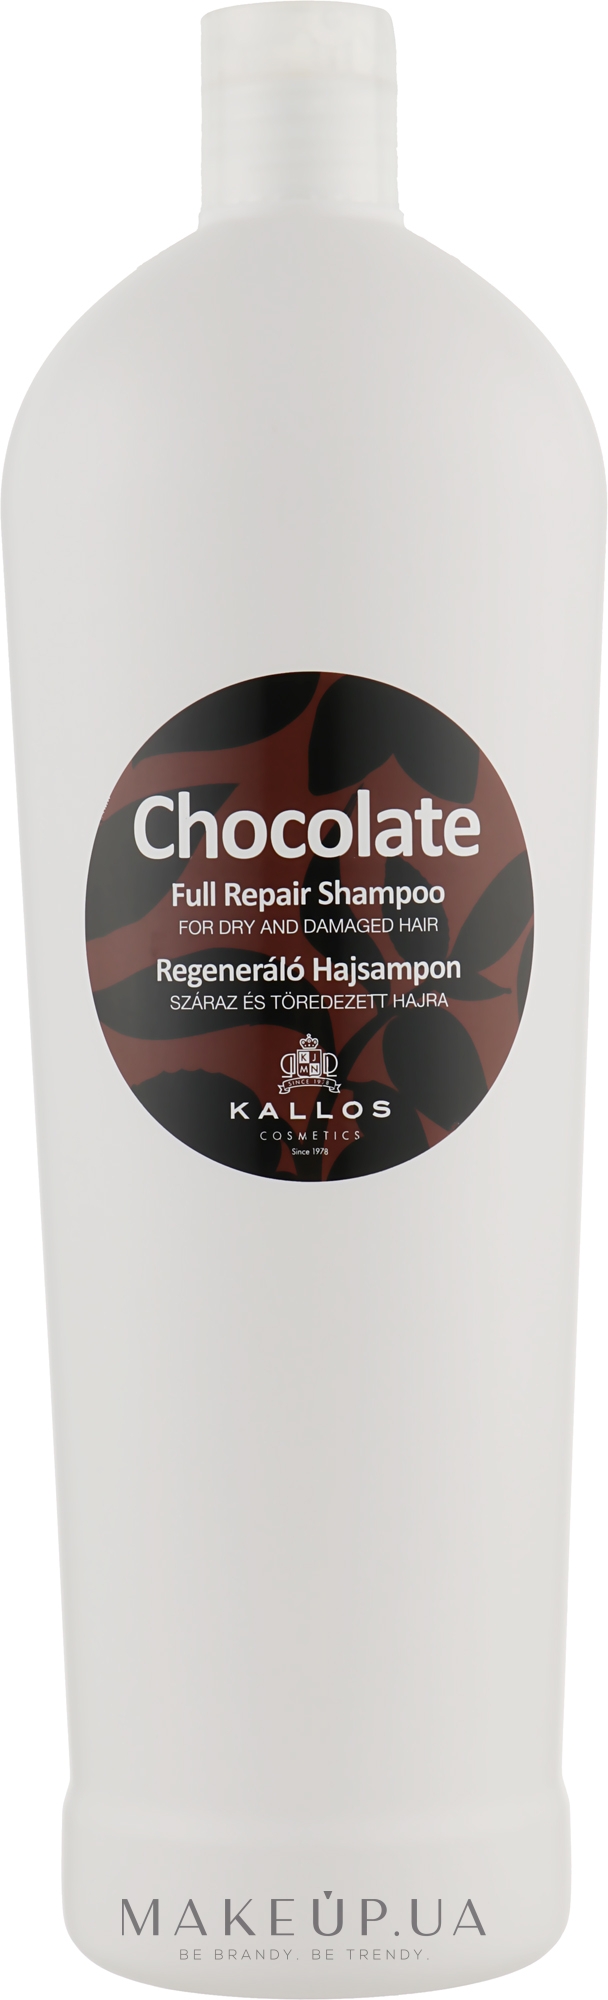 Шампунь для сухого і пошкодженого волосся - Kallos Cosmetics Chocolate Full Repair Shampoo — фото 1000ml